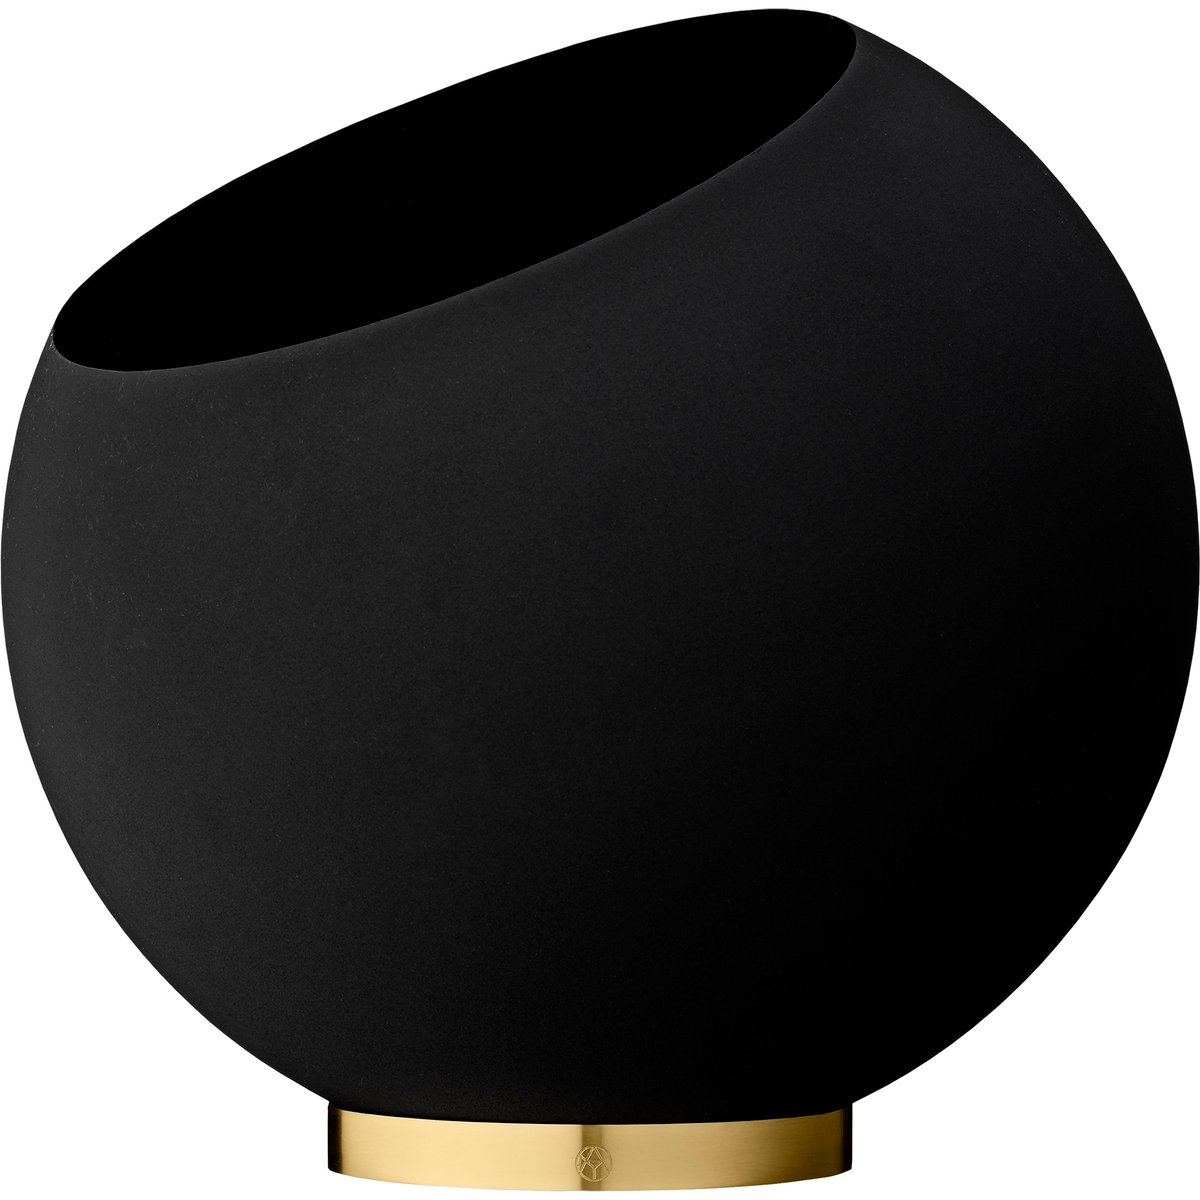 AYTM Globe urtepotte Ø43 cm Black